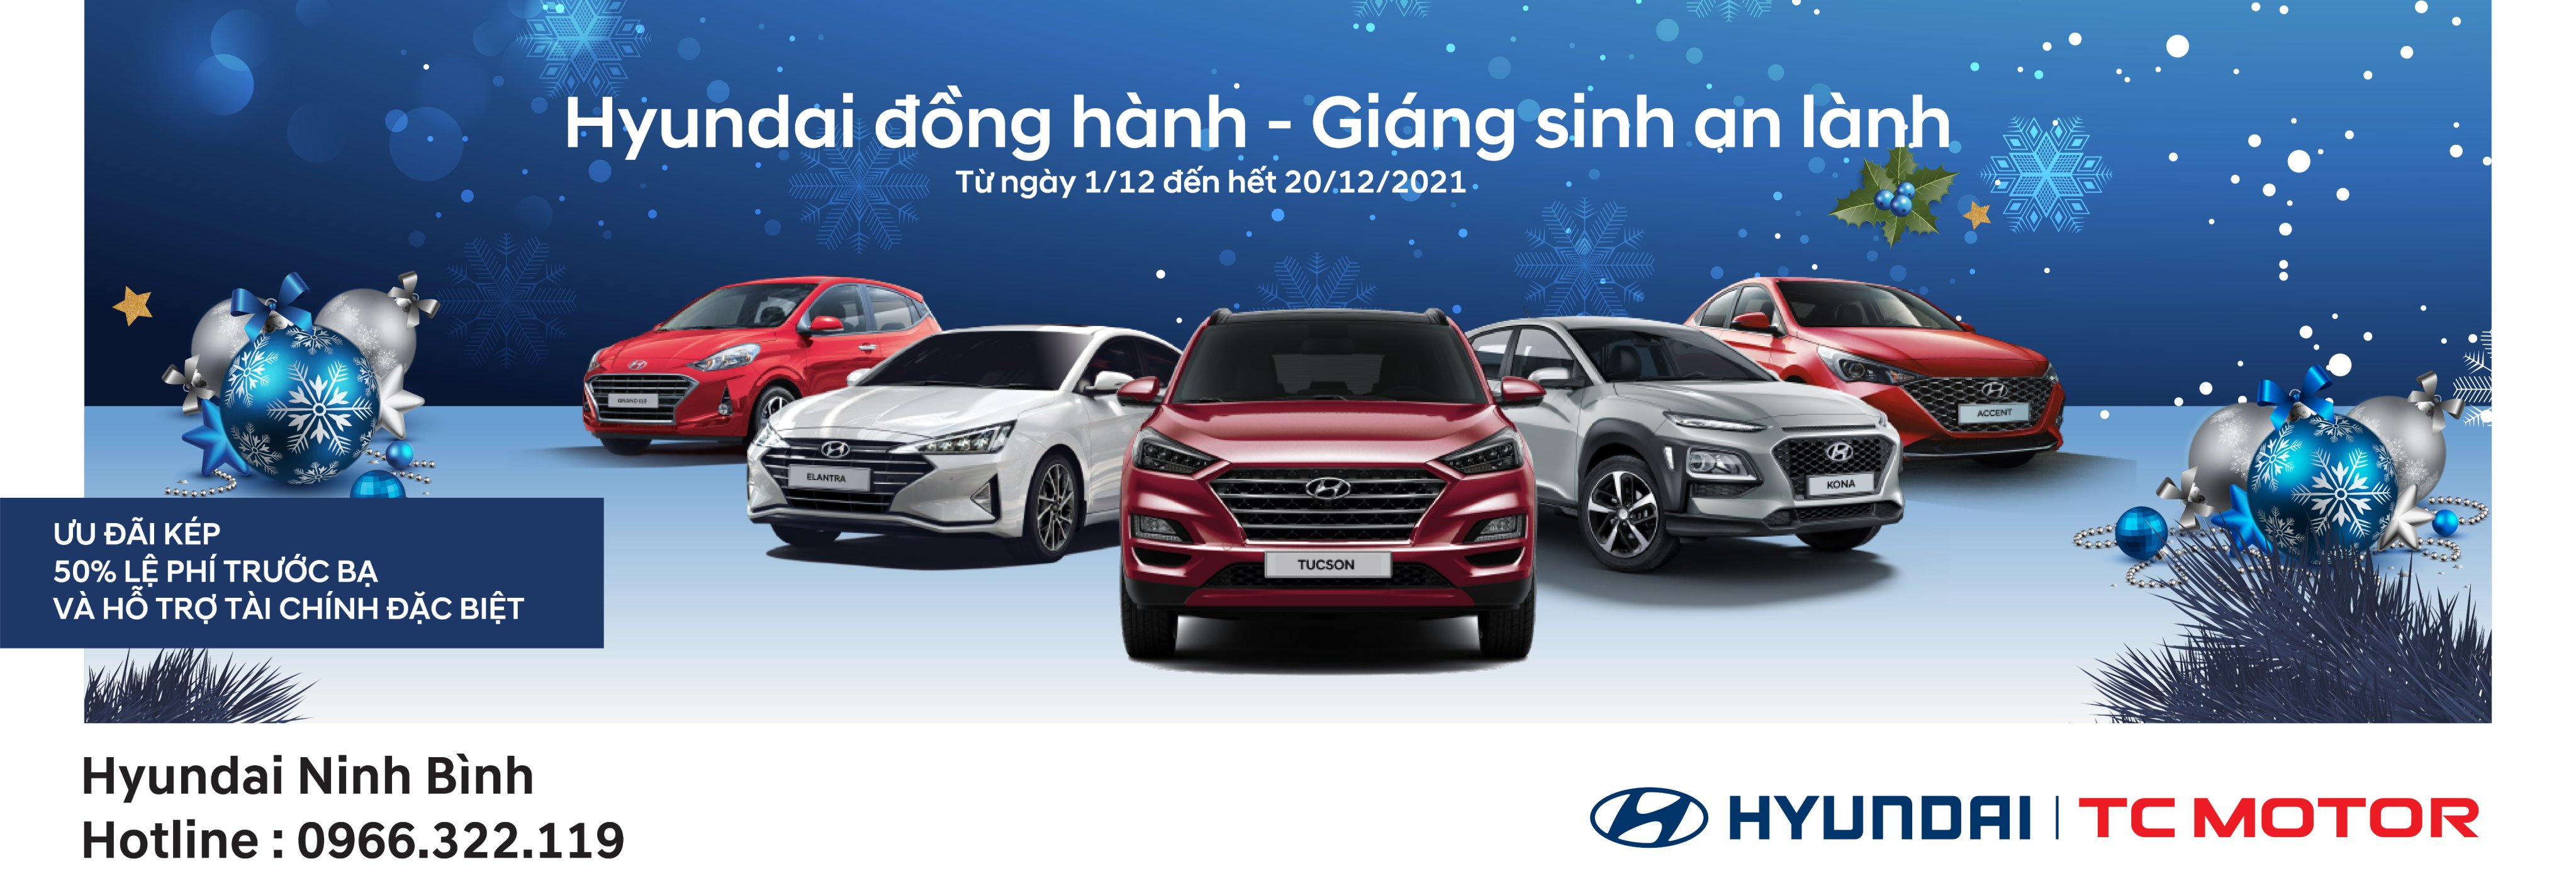 Hyundai Ninh Bình đồng hành - Giáng sinh an lành